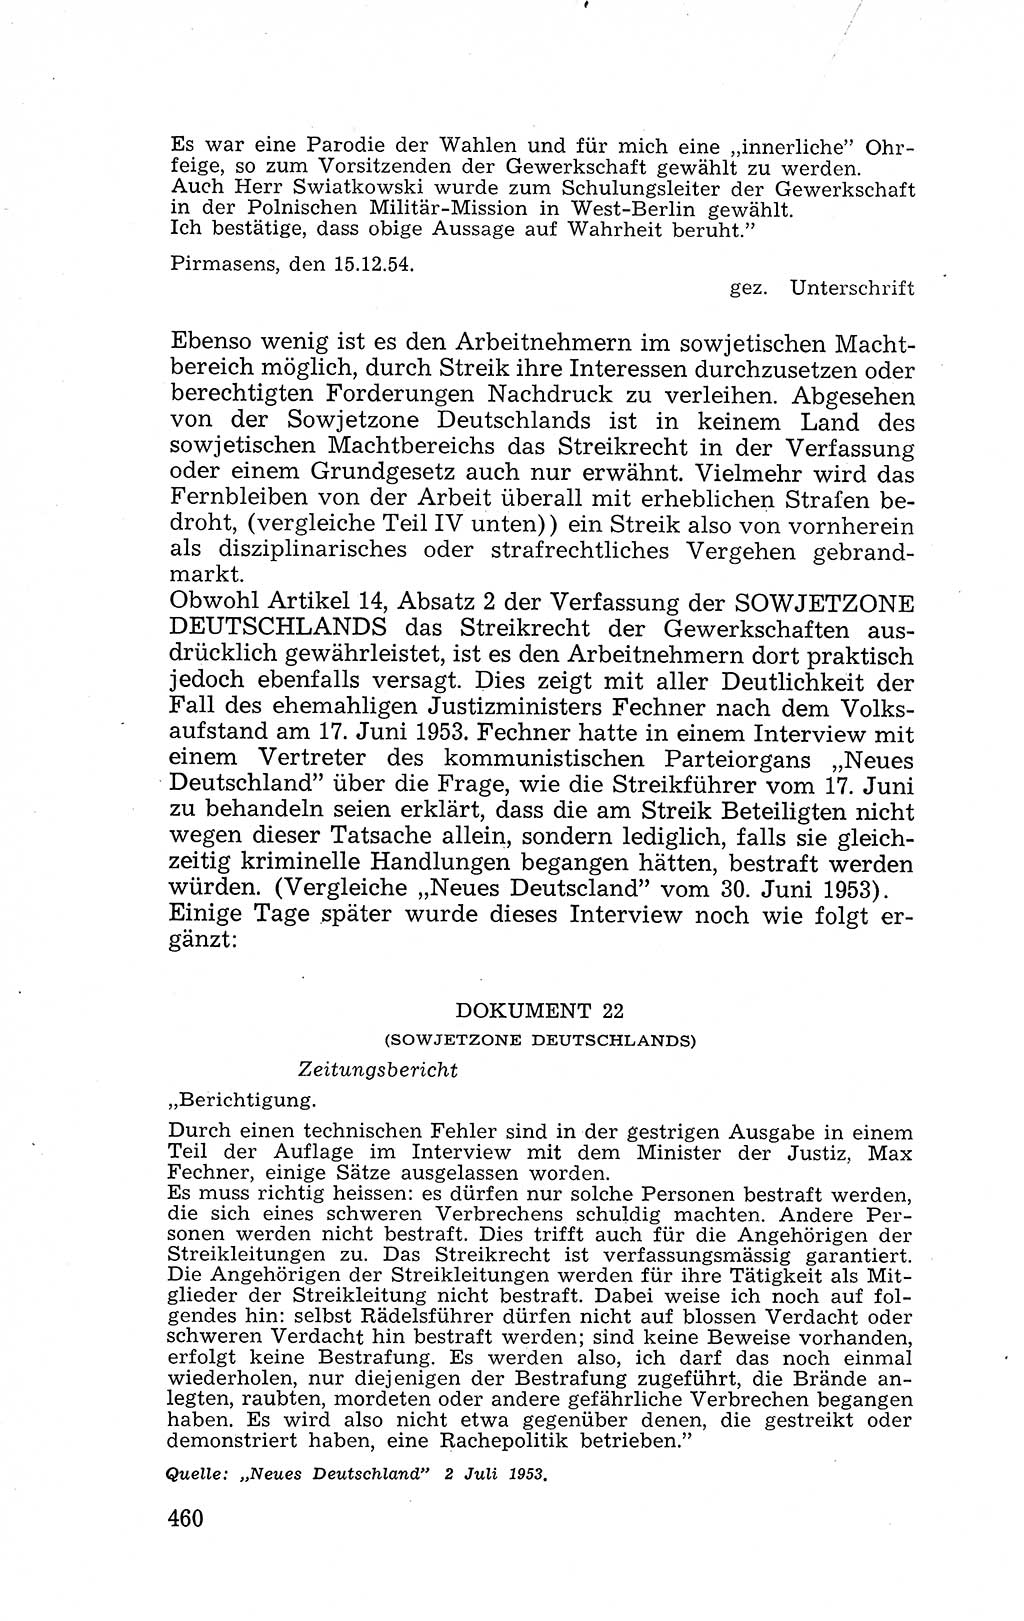 Recht in Fesseln, Dokumente, Internationale Juristen-Kommission [Bundesrepublik Deutschland (BRD)] 1955, Seite 460 (R. Dok. IJK BRD 1955, S. 460)